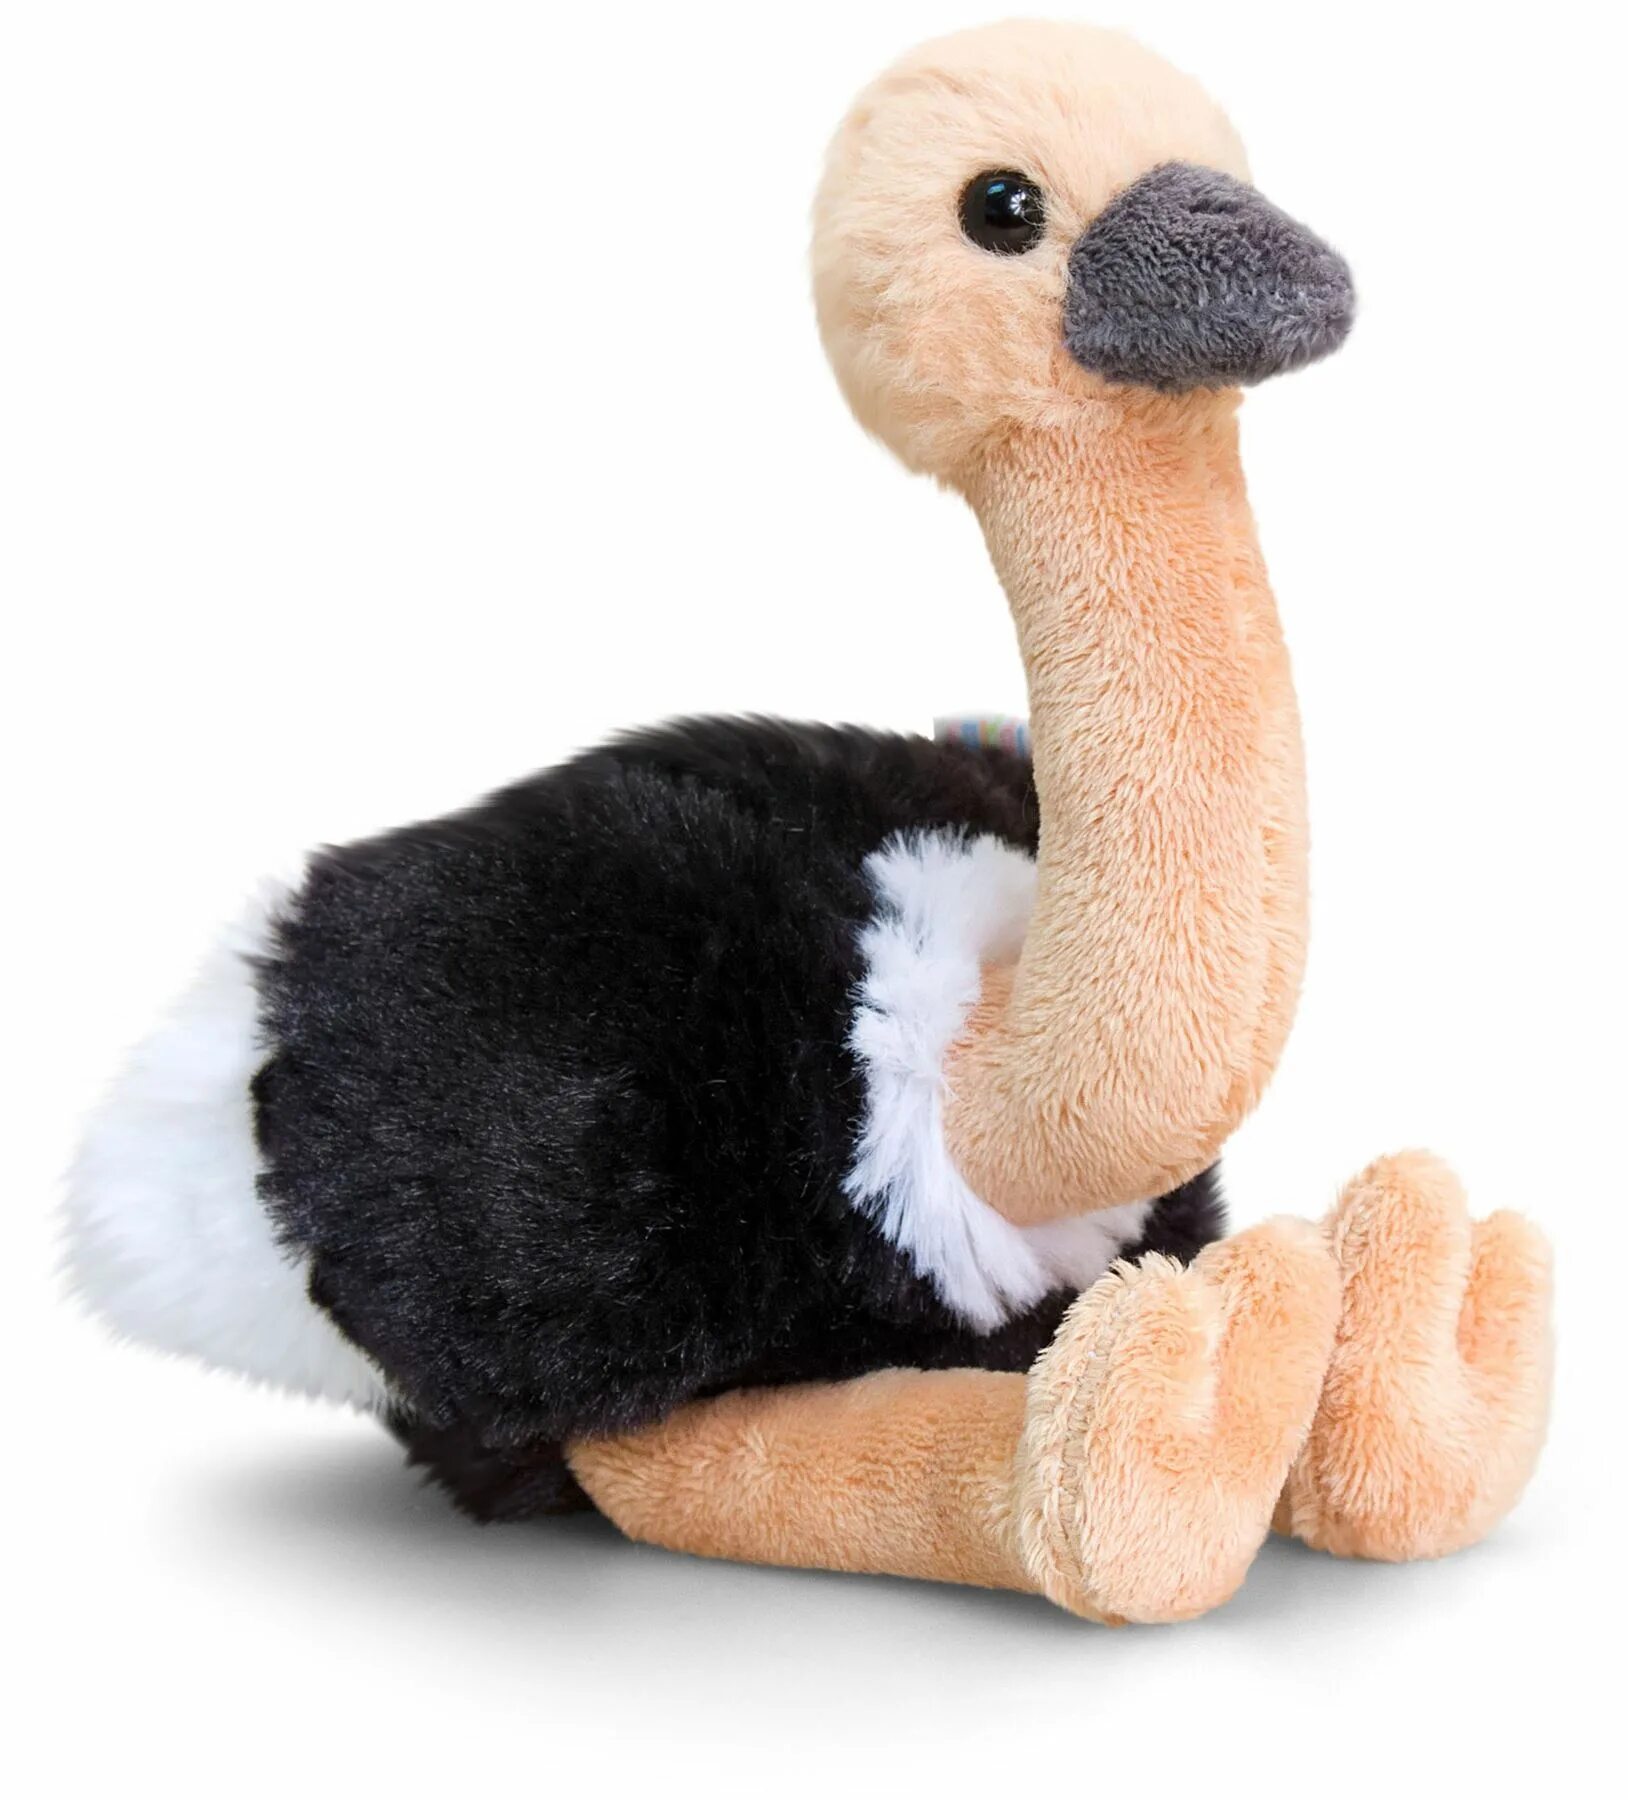 Мягкая игрушка Wild Planet страусенок, 15 см. Keel Toys Pippins Plush. Страус игрушка. Плюшевый страус.